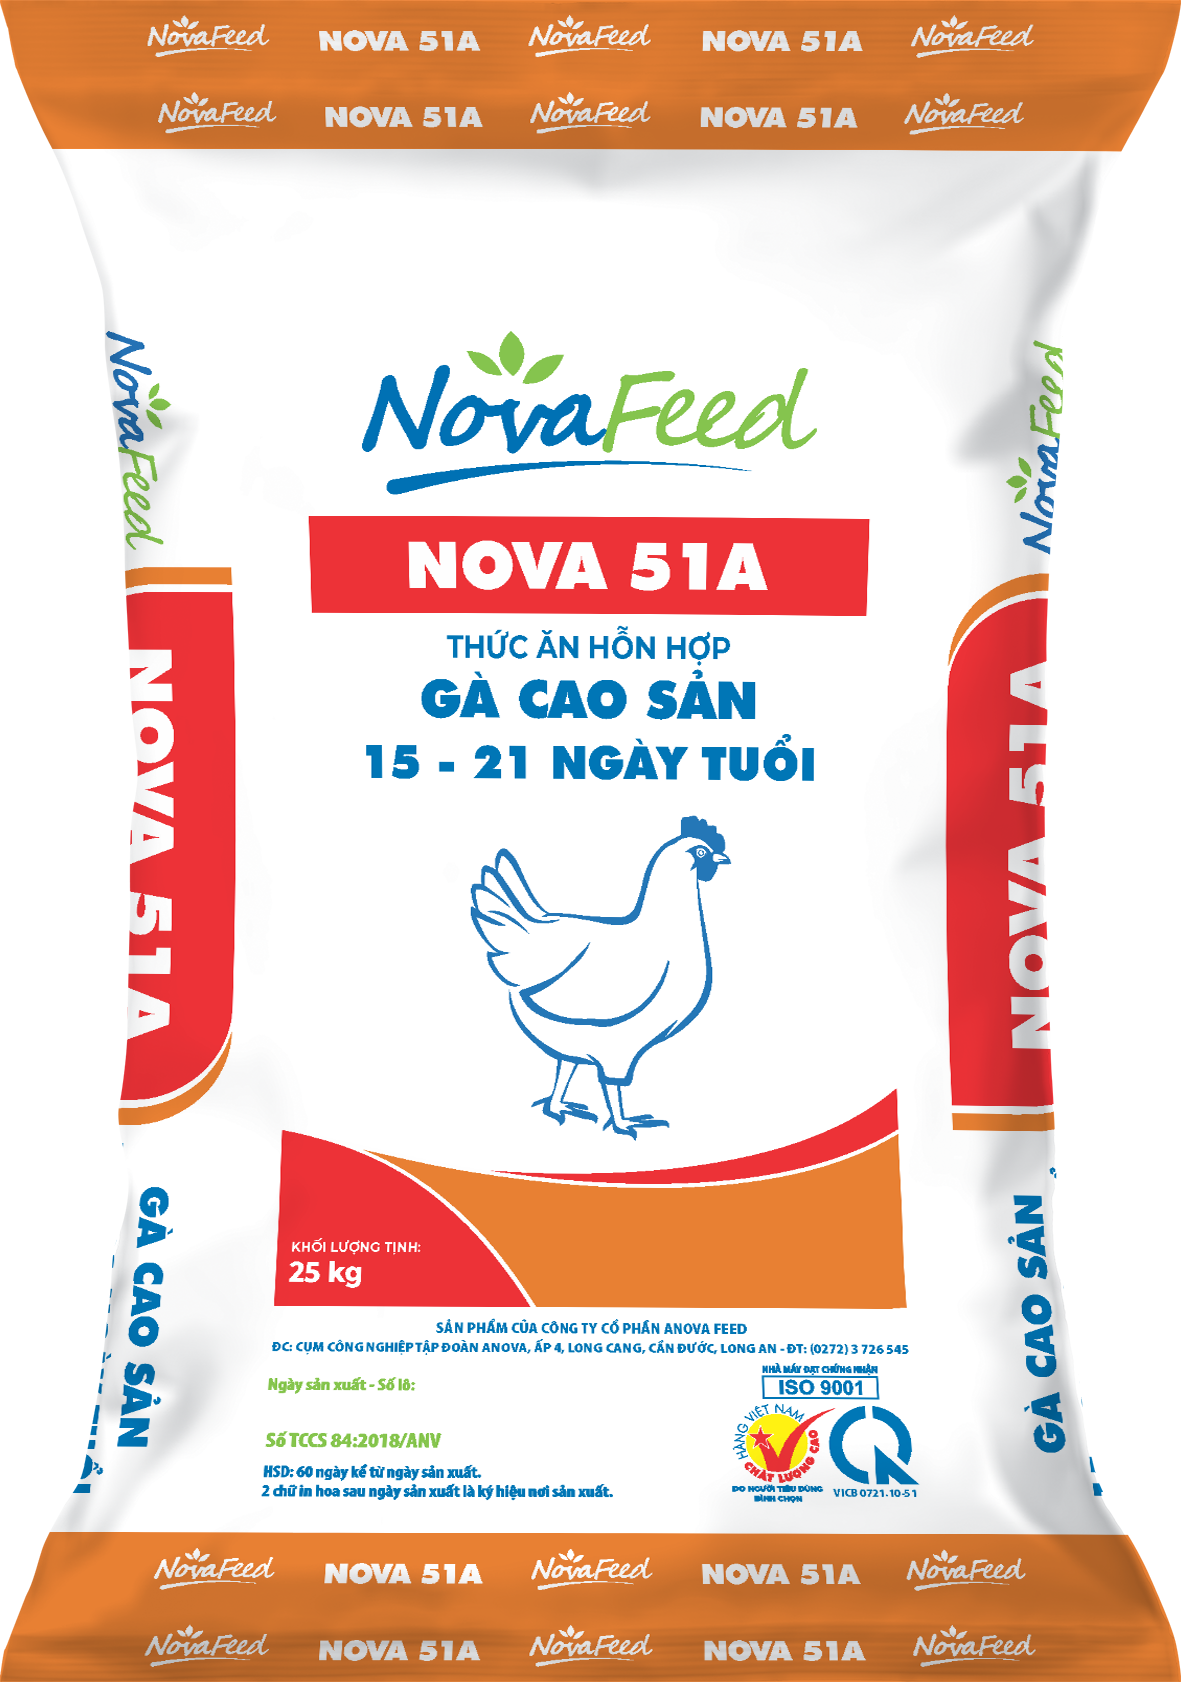 Thức ăn hỗn hợp gà cao sản 15 - 21 ngày tuổi NOVA 51A